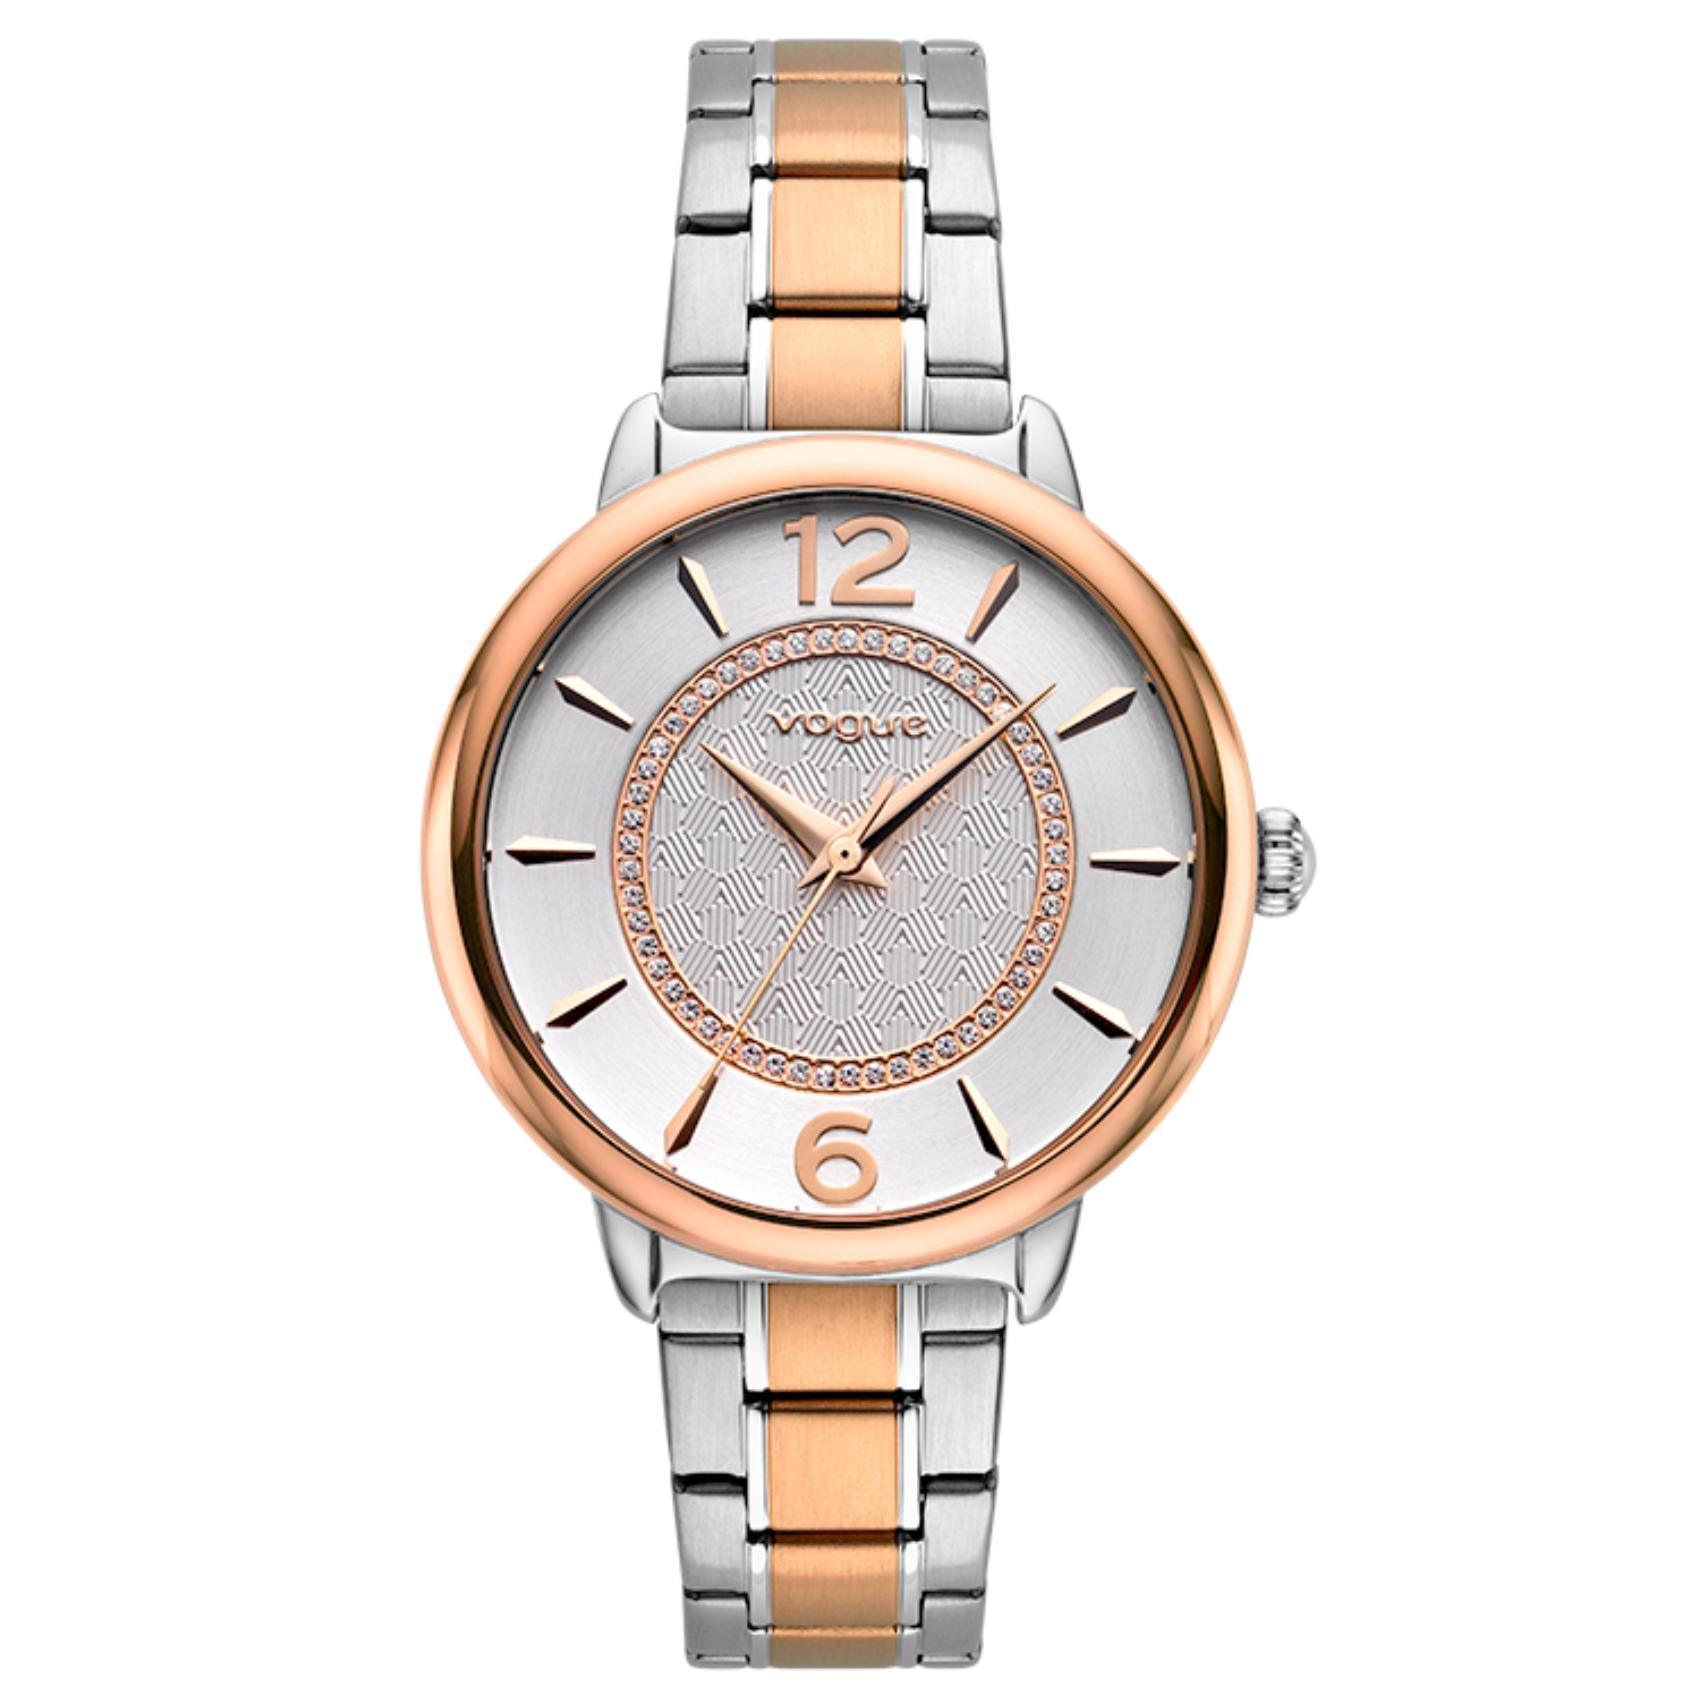 Γυναικείο ρολόι Vogue Lucy 2020612471 με δίχρωμο ασημί-χρυσό ατσάλινο μπρασελέ και ασημί καντράν διαμέτρου 36,7mm.